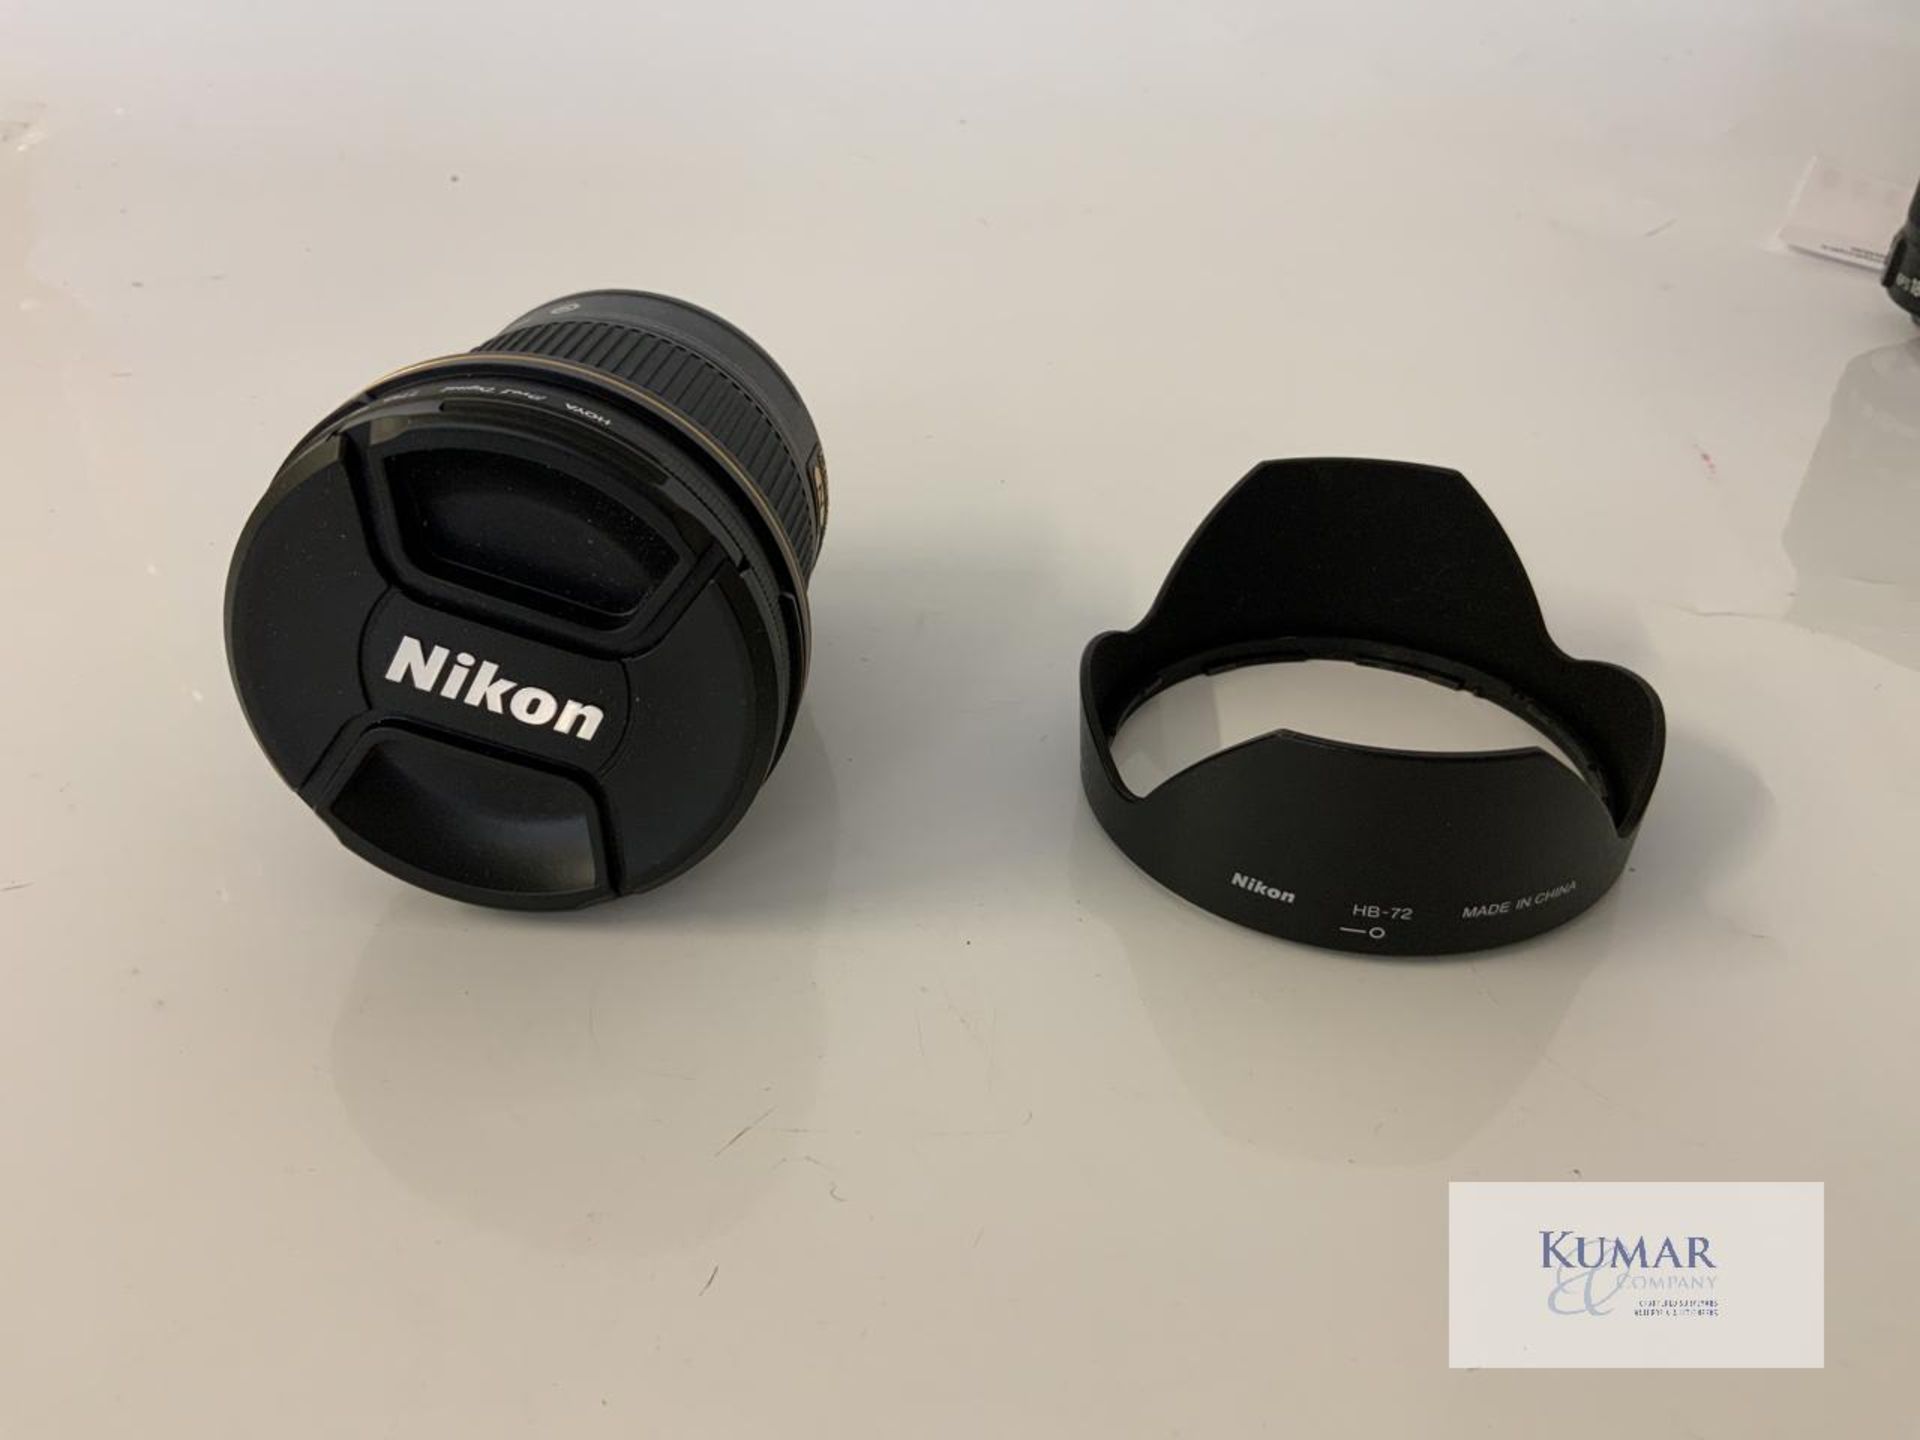 Nikon AF-S Nikkor 20mm 1:1.8G ED Zoom Lens with Nikon HB 72 Lens Hood & Carry Case - Image 2 of 10